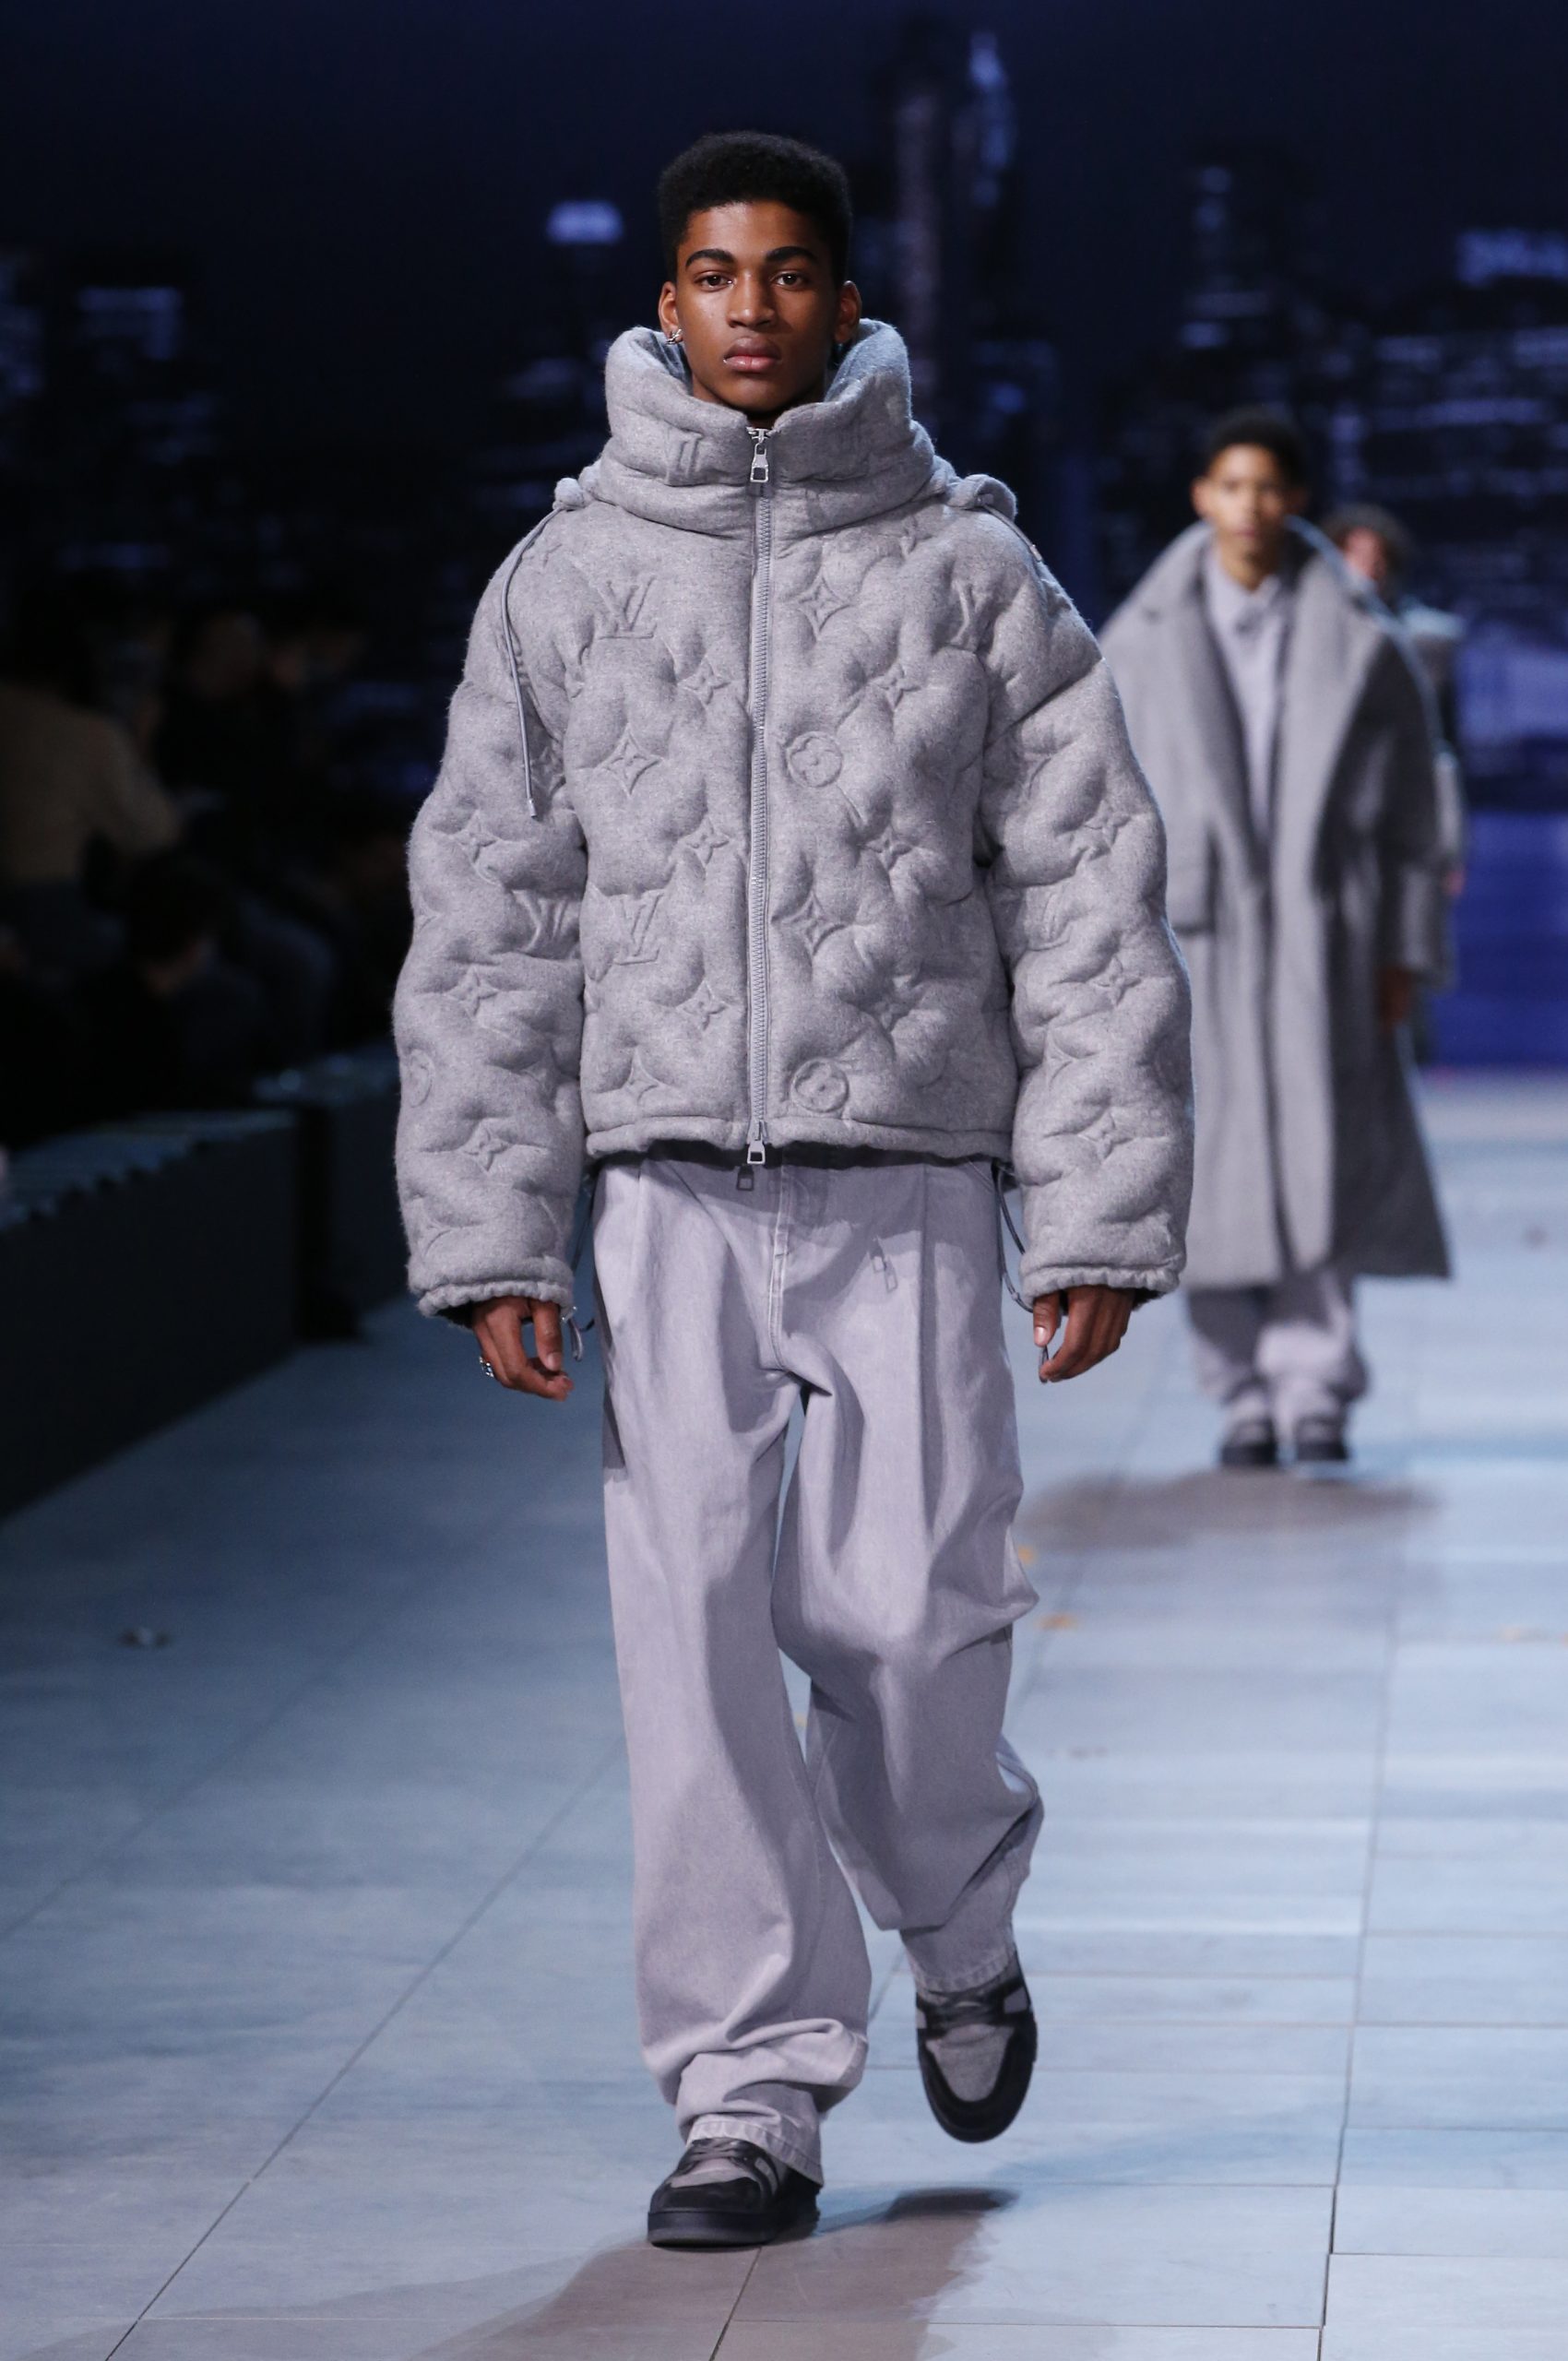 Paris Fashion Week: Louis Vuitton shows Virgil Abloh's last collection